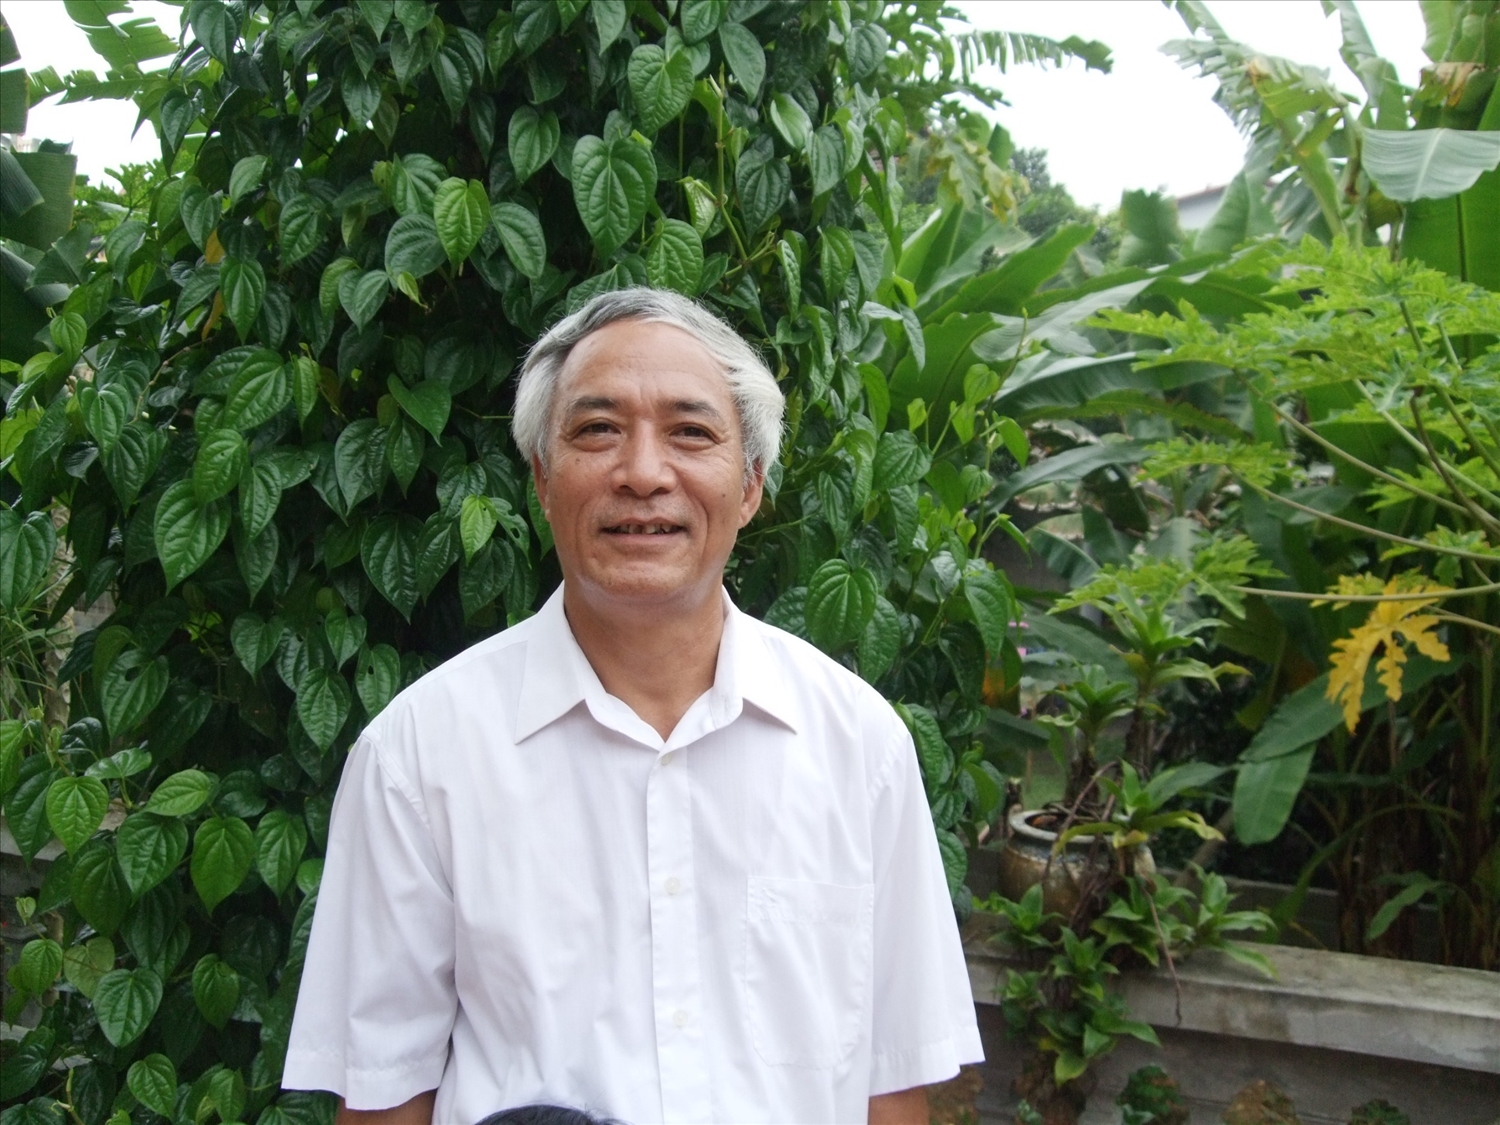 Nhà văn Trịnh Thanh Phong - nhà văn lão làng với đề tài nông thôn miền núi và người lính